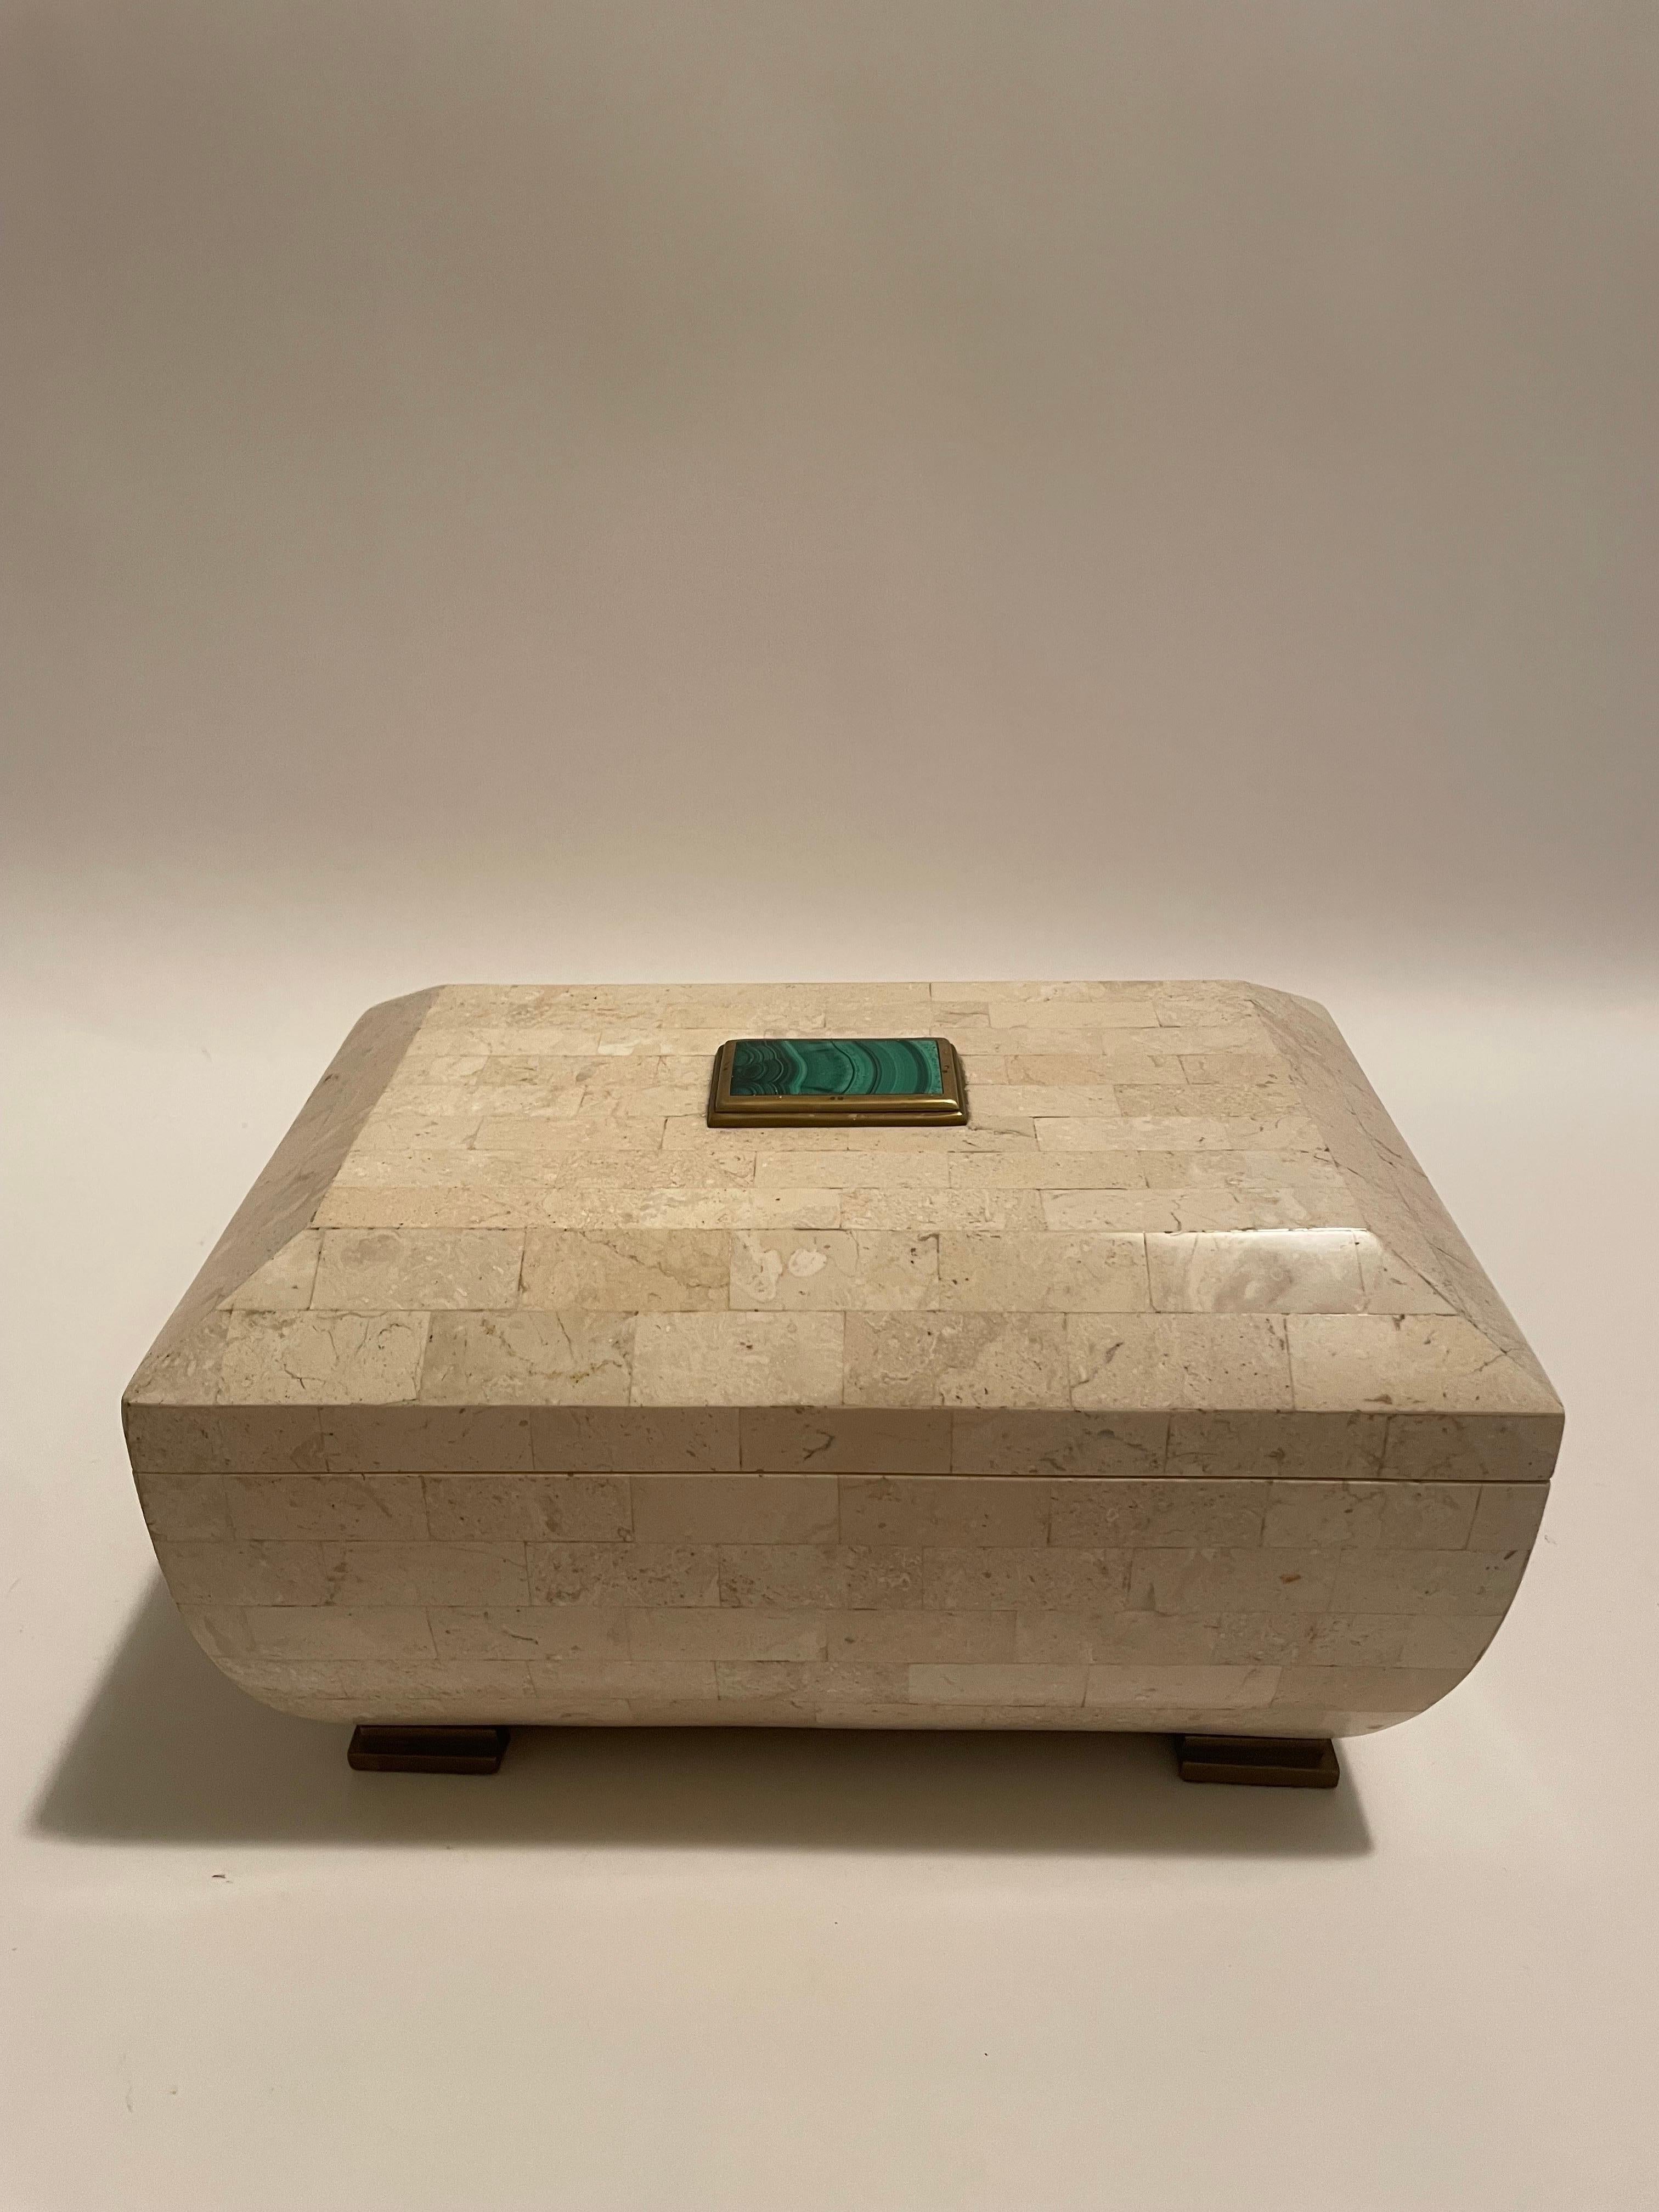 Voici une superbe boîte en pierre tessellée de Maitland Smith avec une pierre de malachite verte sur le dessus et des pieds en laiton. 
La boîte est en excellent état et ferait un bel ajout à n'importe quelle maison. 